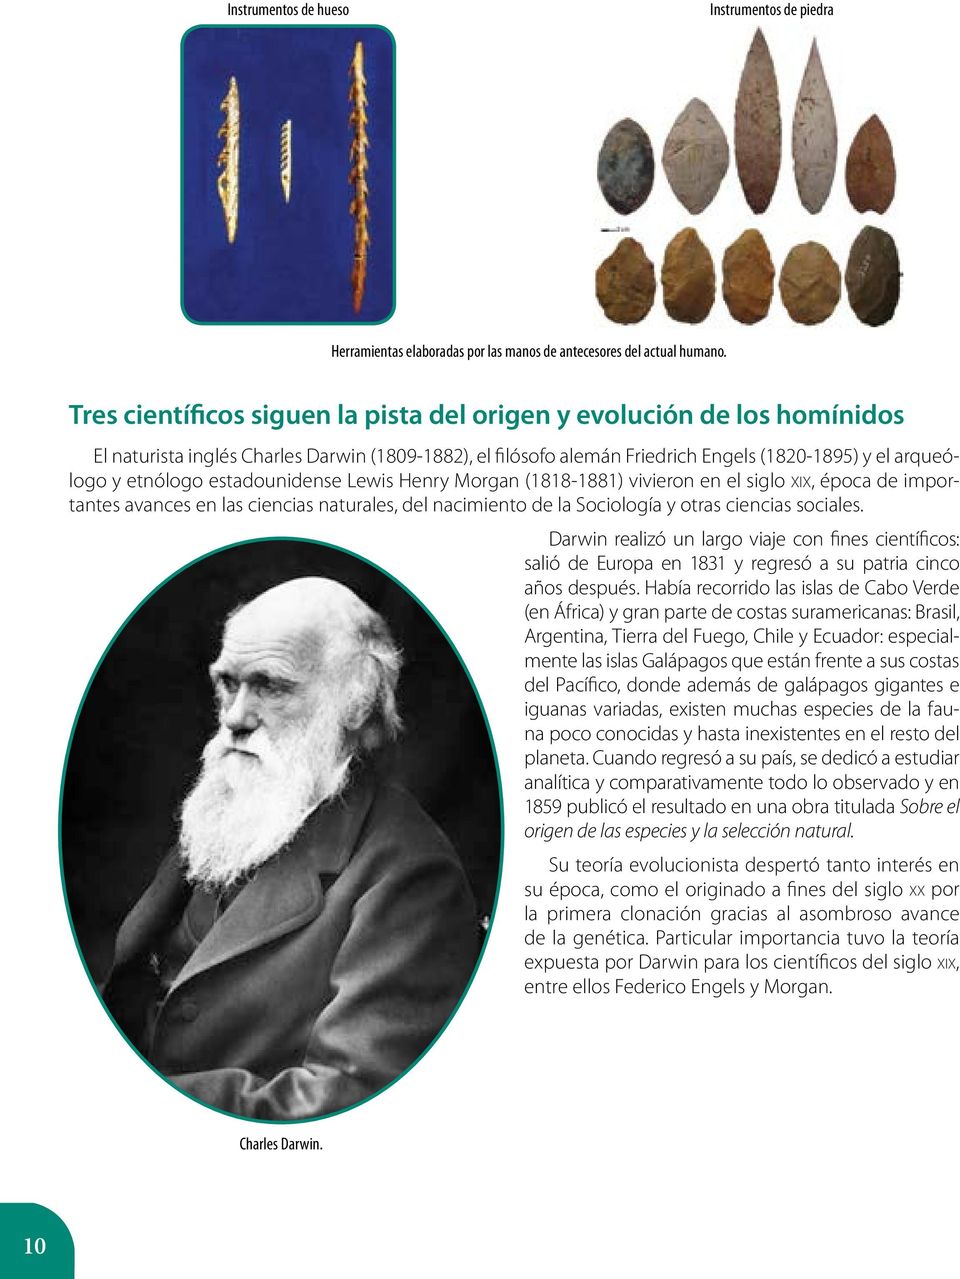 estadounidense Lewis Henry Morgan (1818-1881) vivieron en el siglo XIX, época de importantes avances en las ciencias naturales, del nacimiento de la Sociología y otras ciencias sociales.